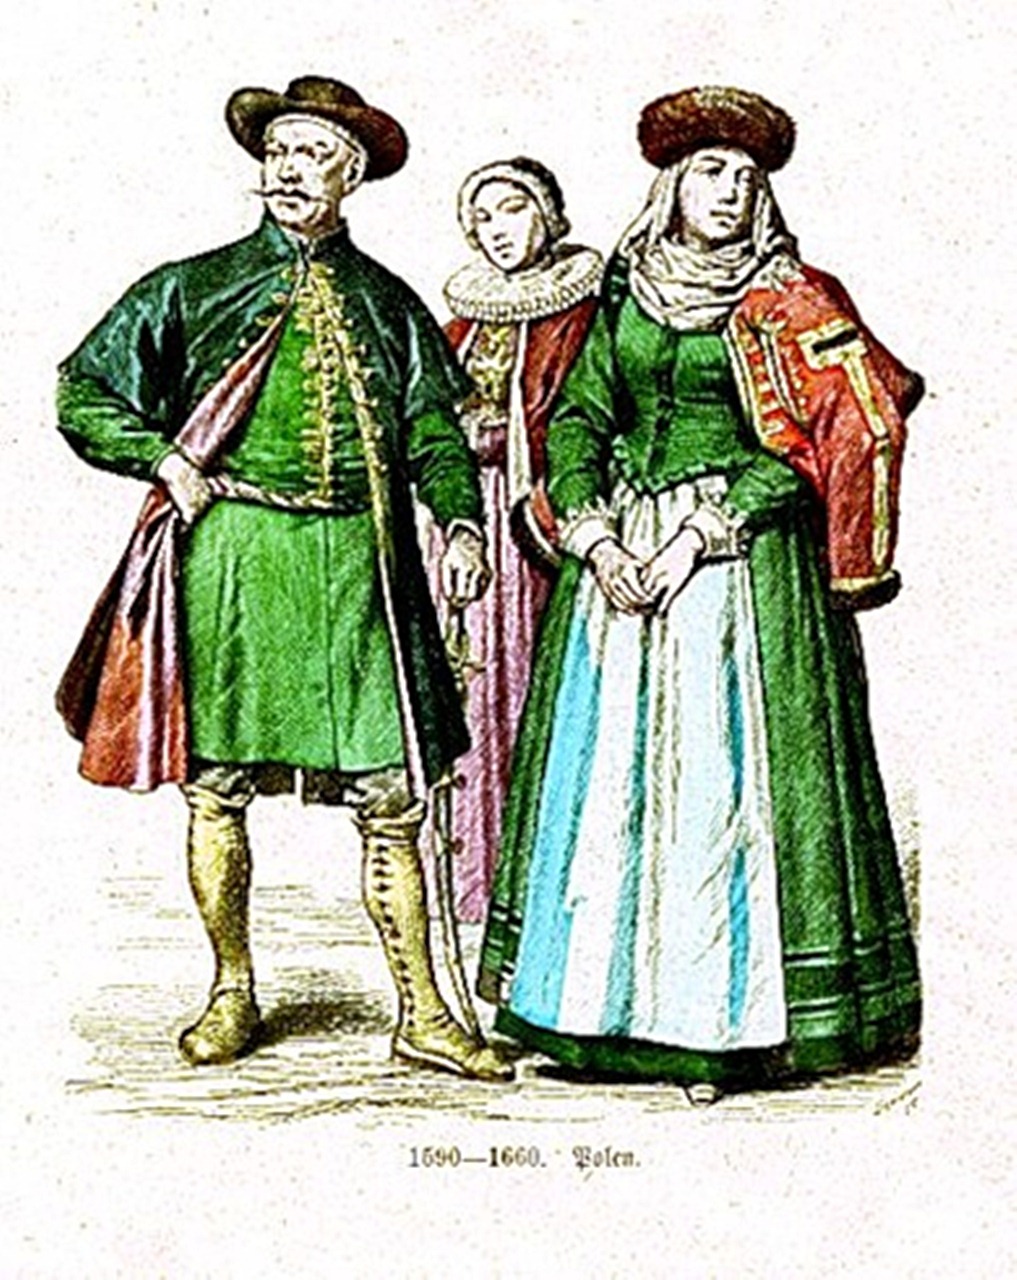 Представники бідної шляхти носили більш скромний одяг, проте намагалися дотримуватись європейських стандартів. Кінець XVI – поч. XVII ст.